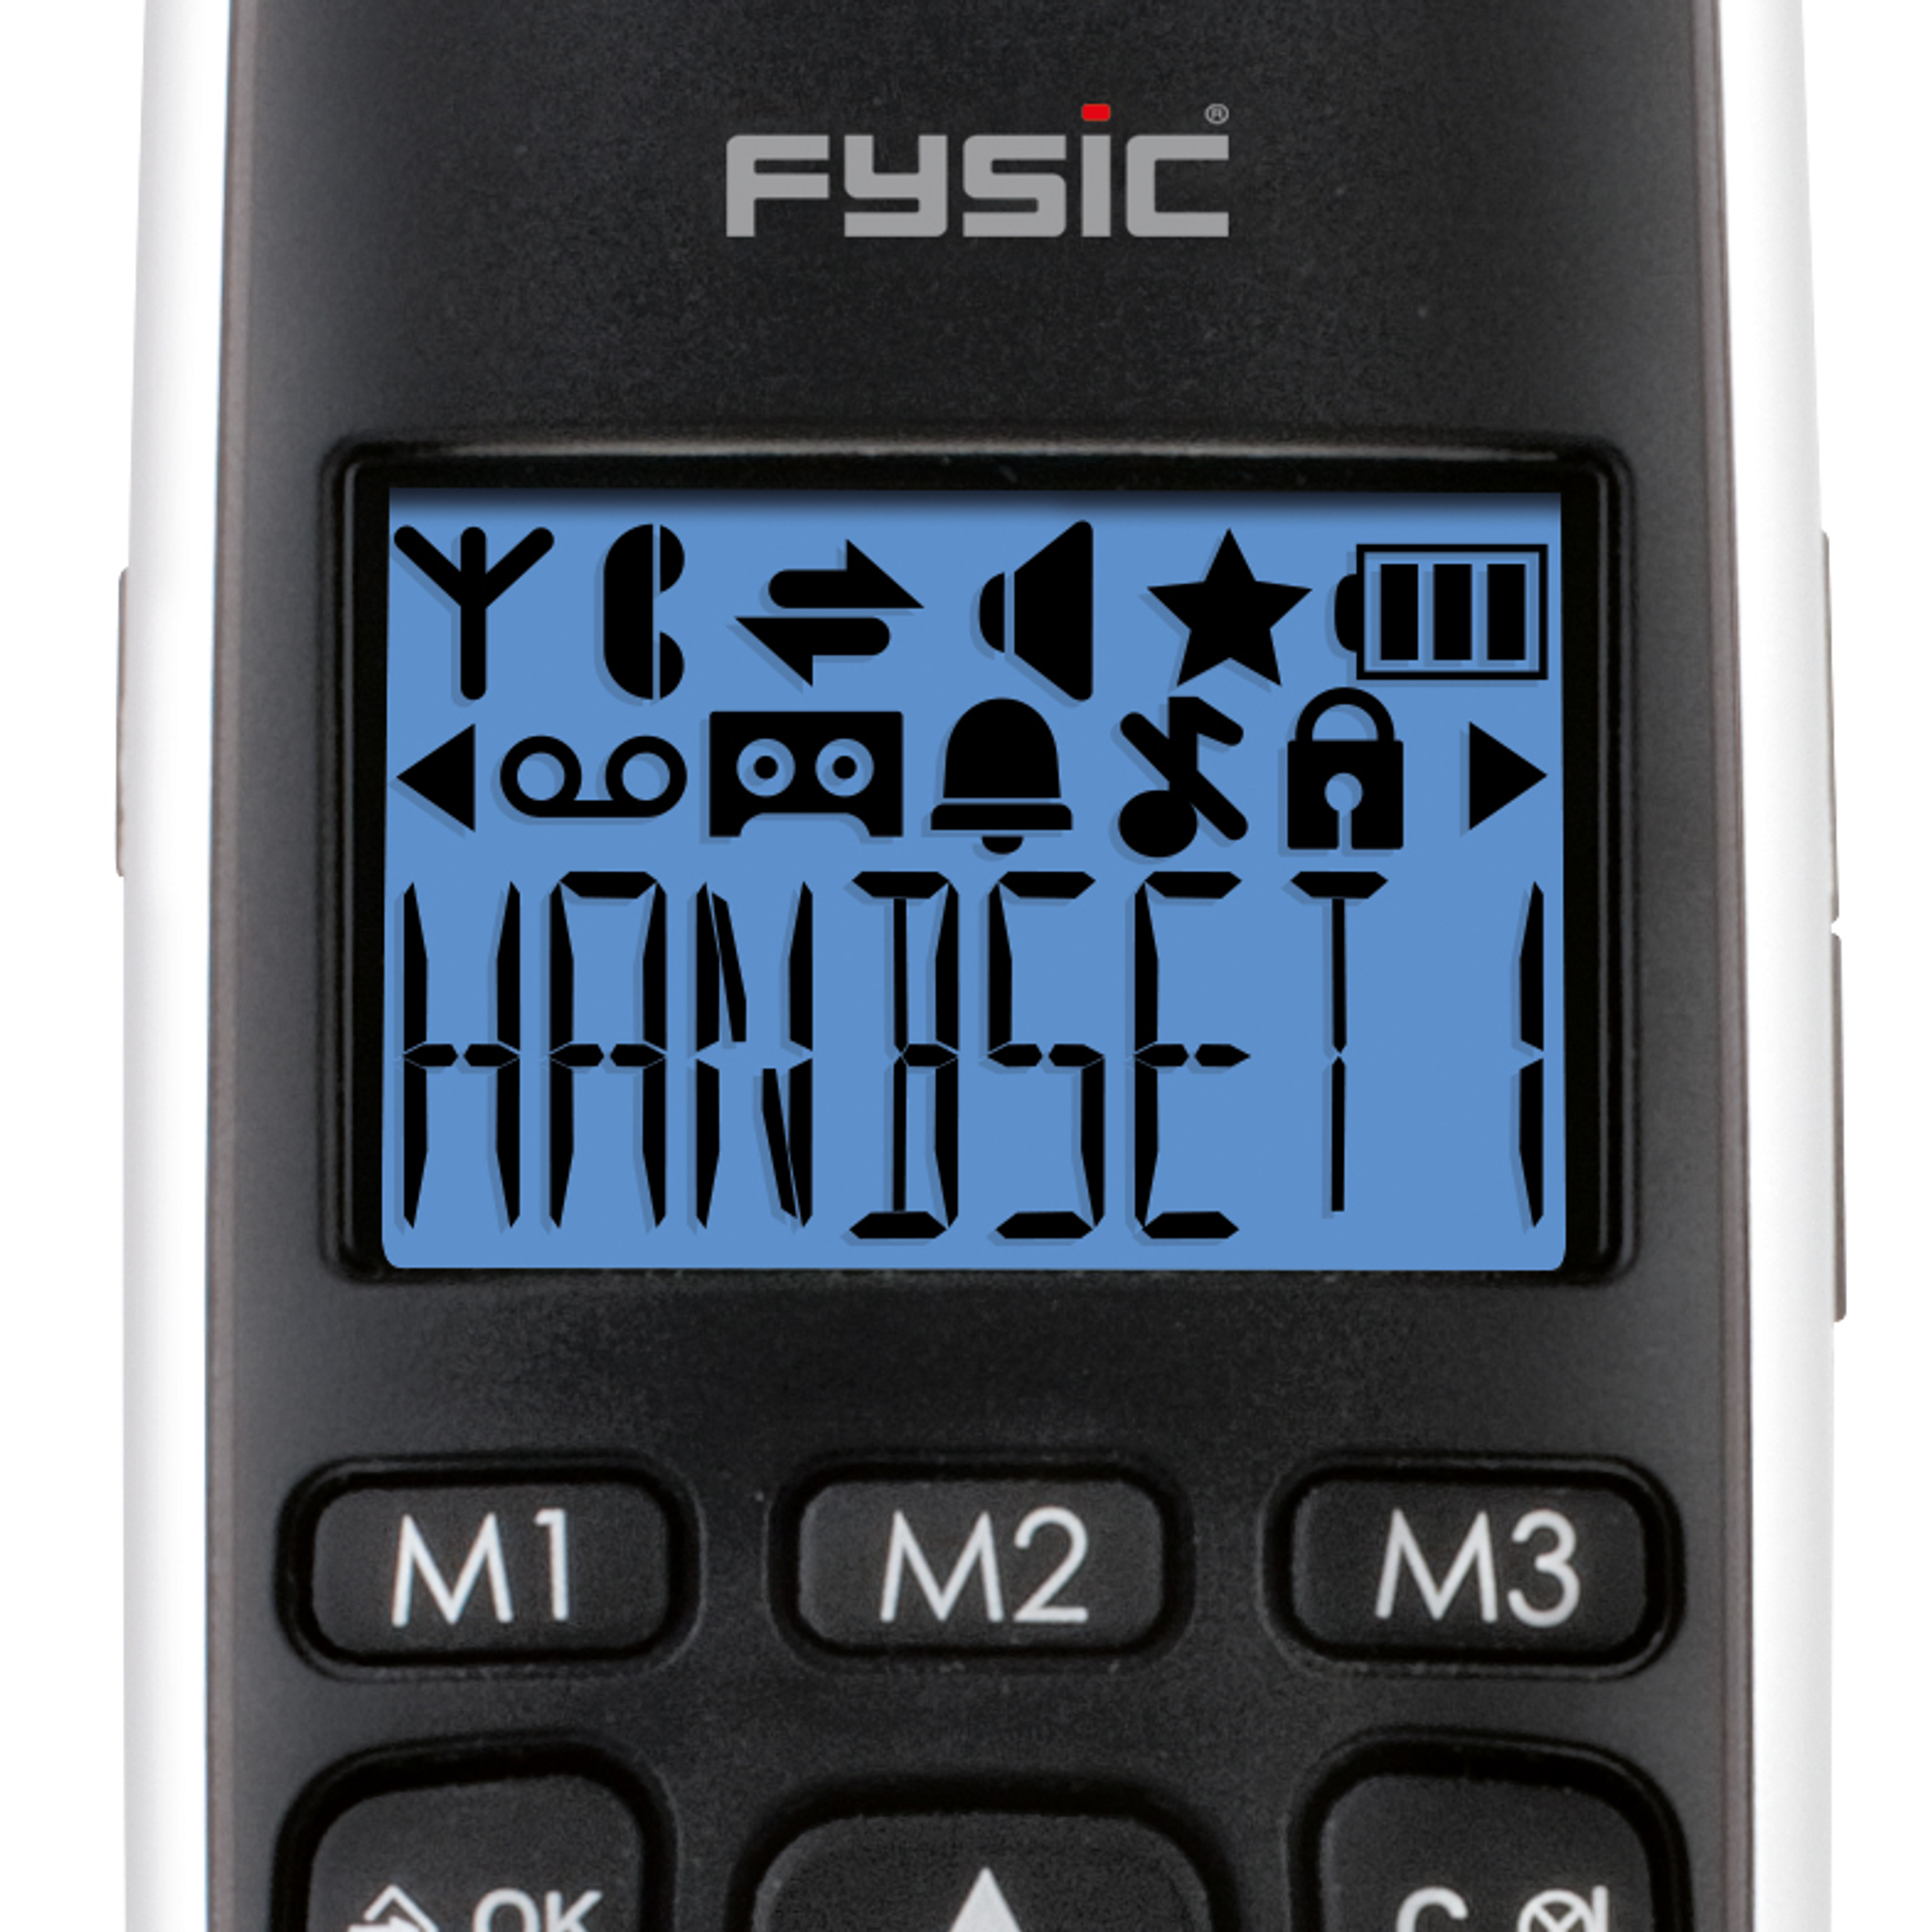 FYSIC FX-6000 - DECT-Telefon - Seniorentelefon mit großen Tasten